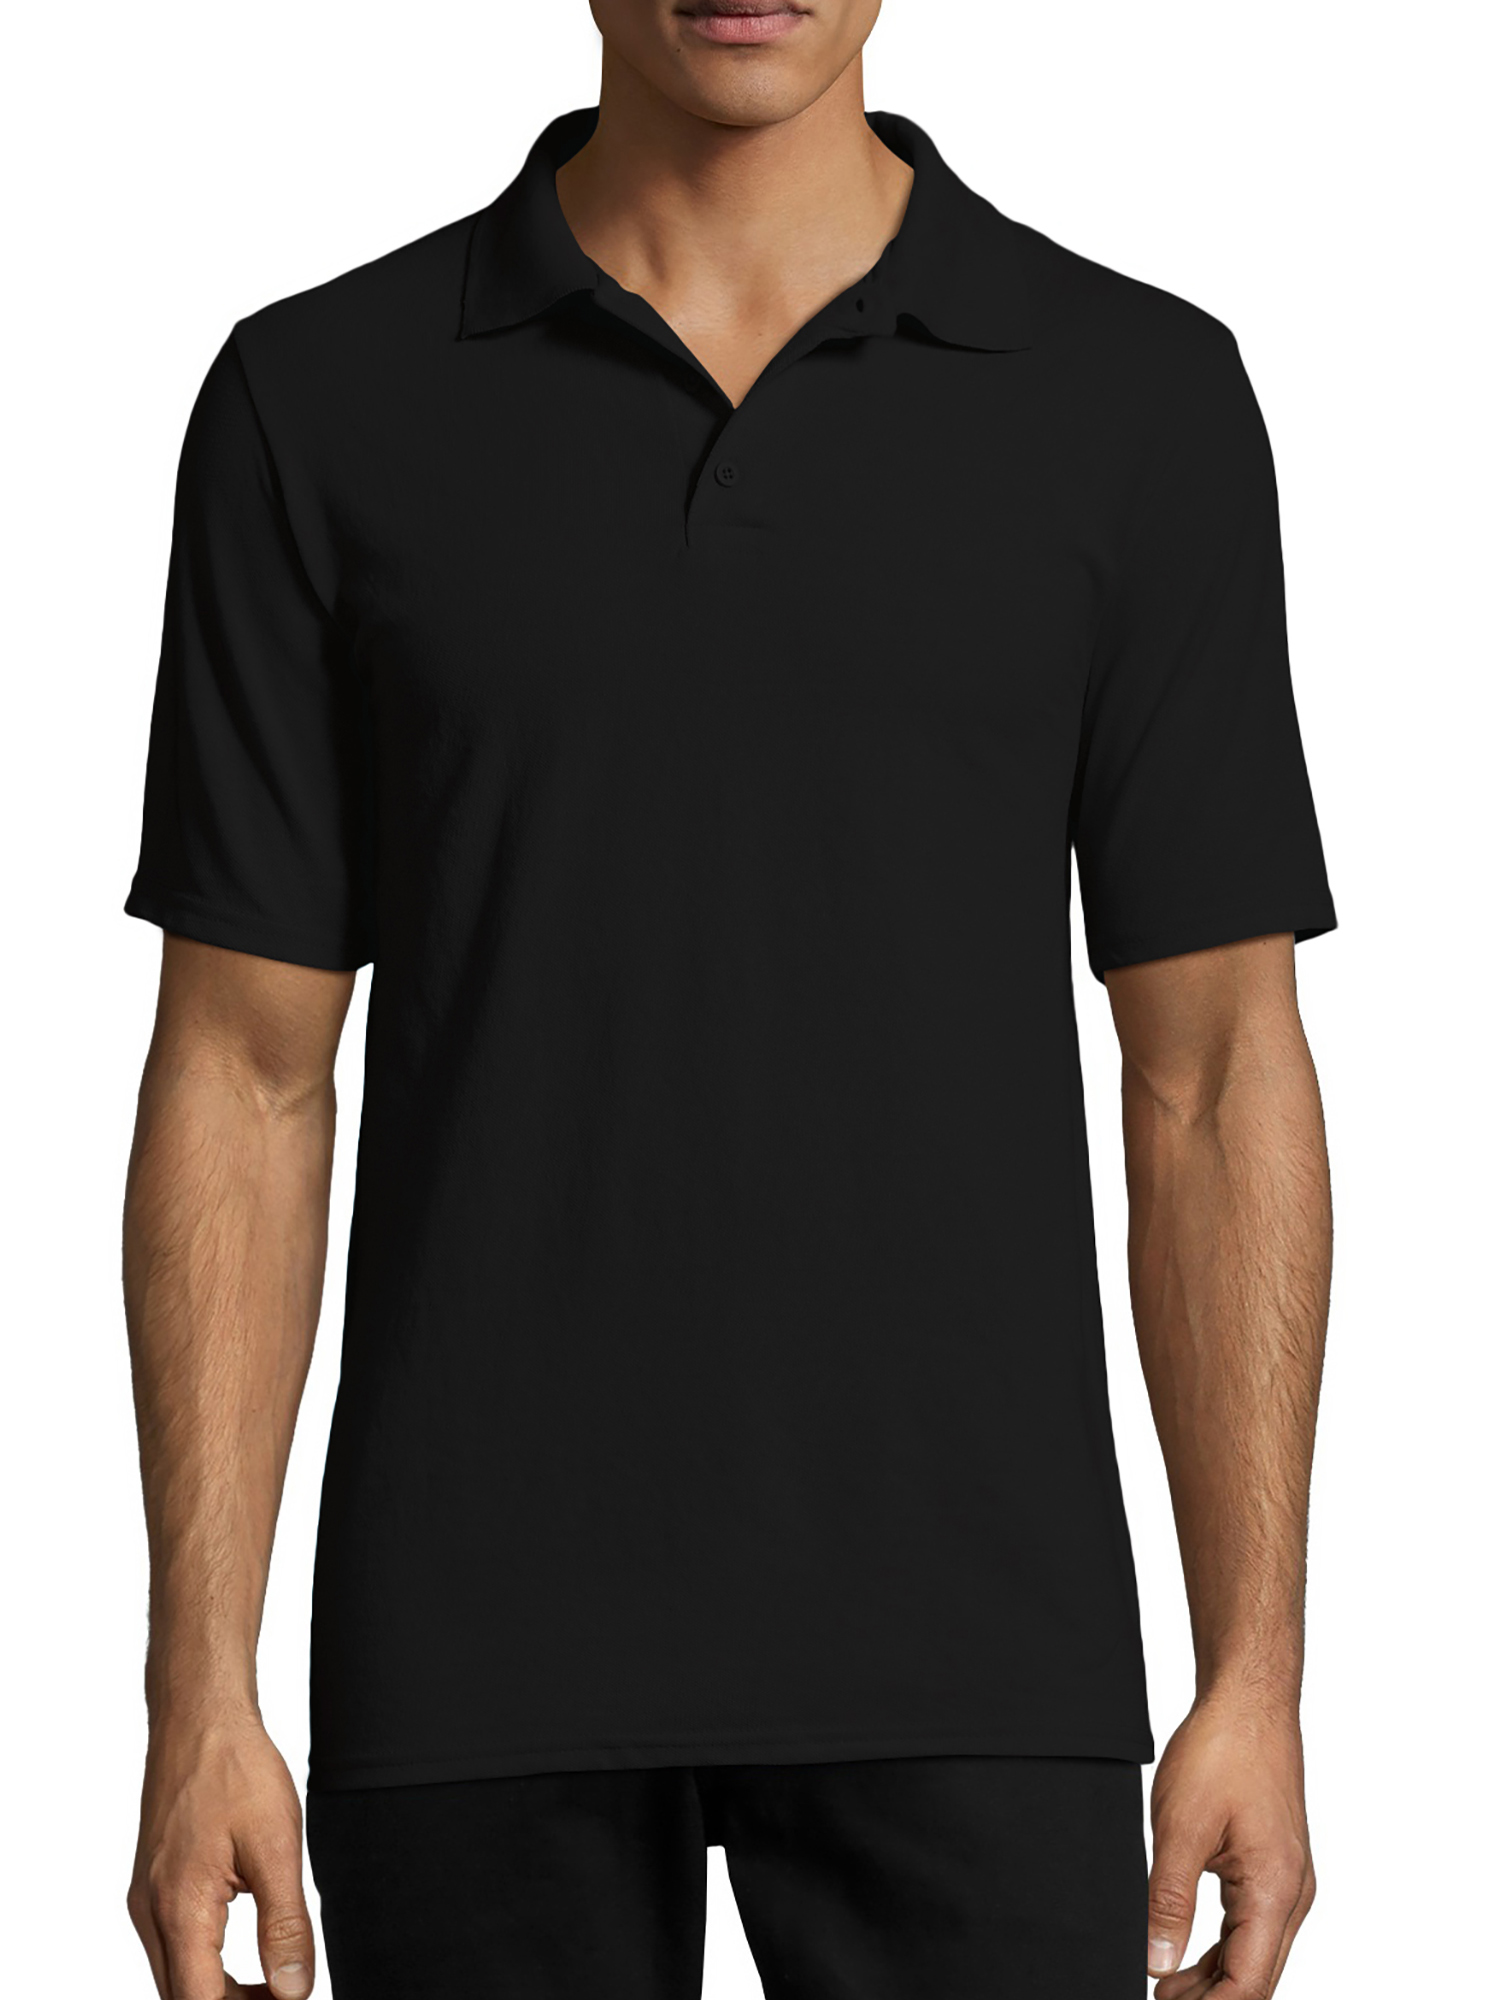 Hanes Men's X-Temp Jersey Polo Shirt - image 1 of 5